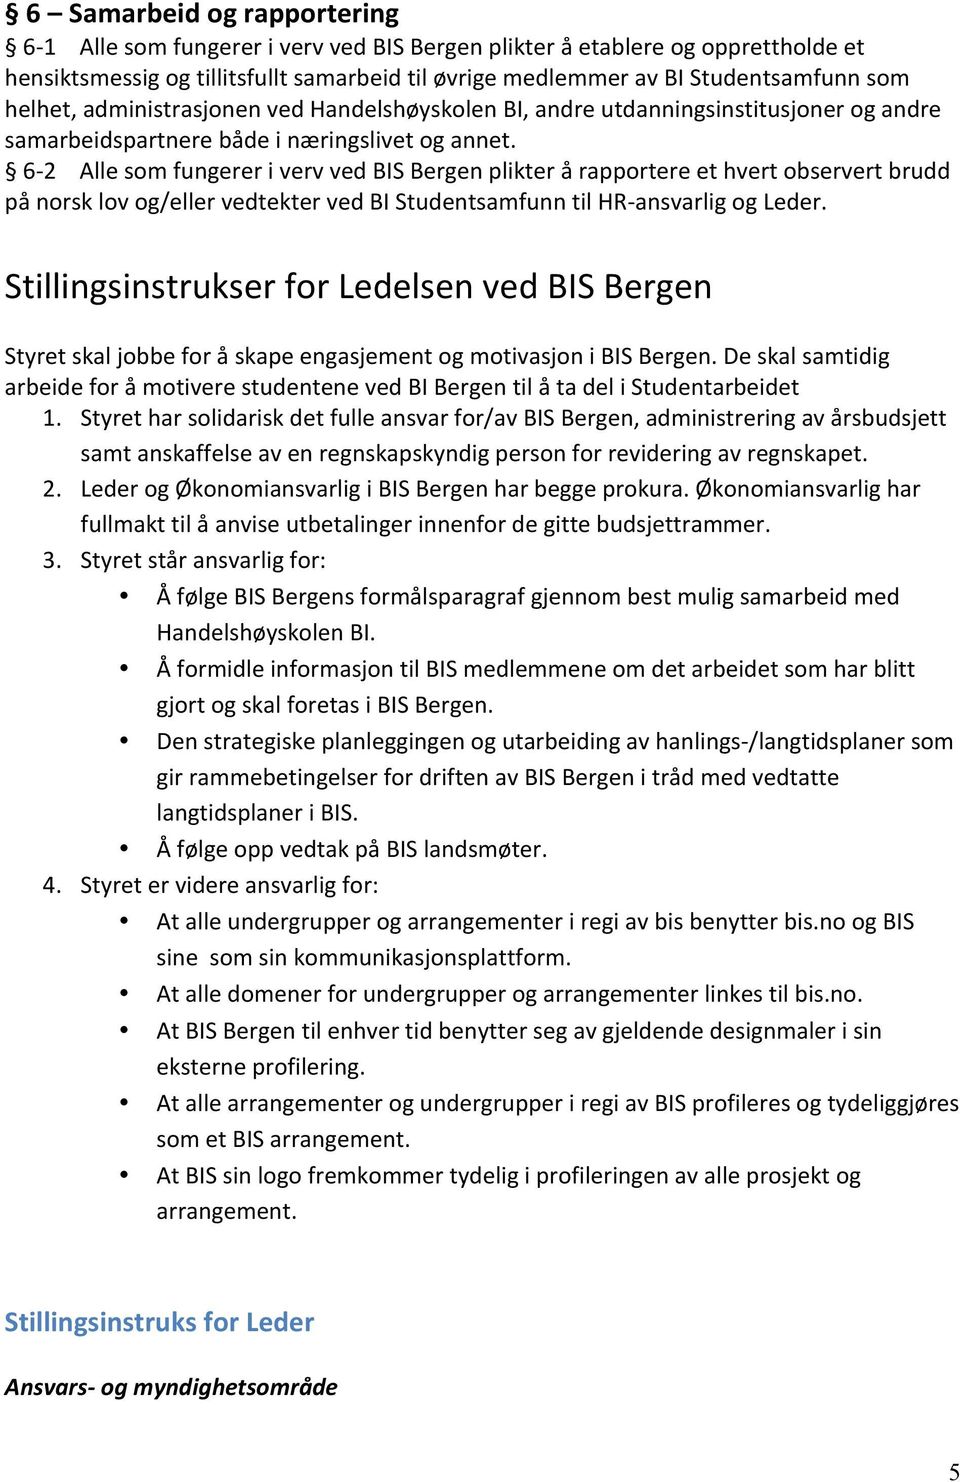 62 Alle som fungerer i verv ved BIS Bergen plikter å rapportere et hvert observert brudd på norsk lov og/eller vedtekter ved BI Studentsamfunn til HRansvarlig og Leder.